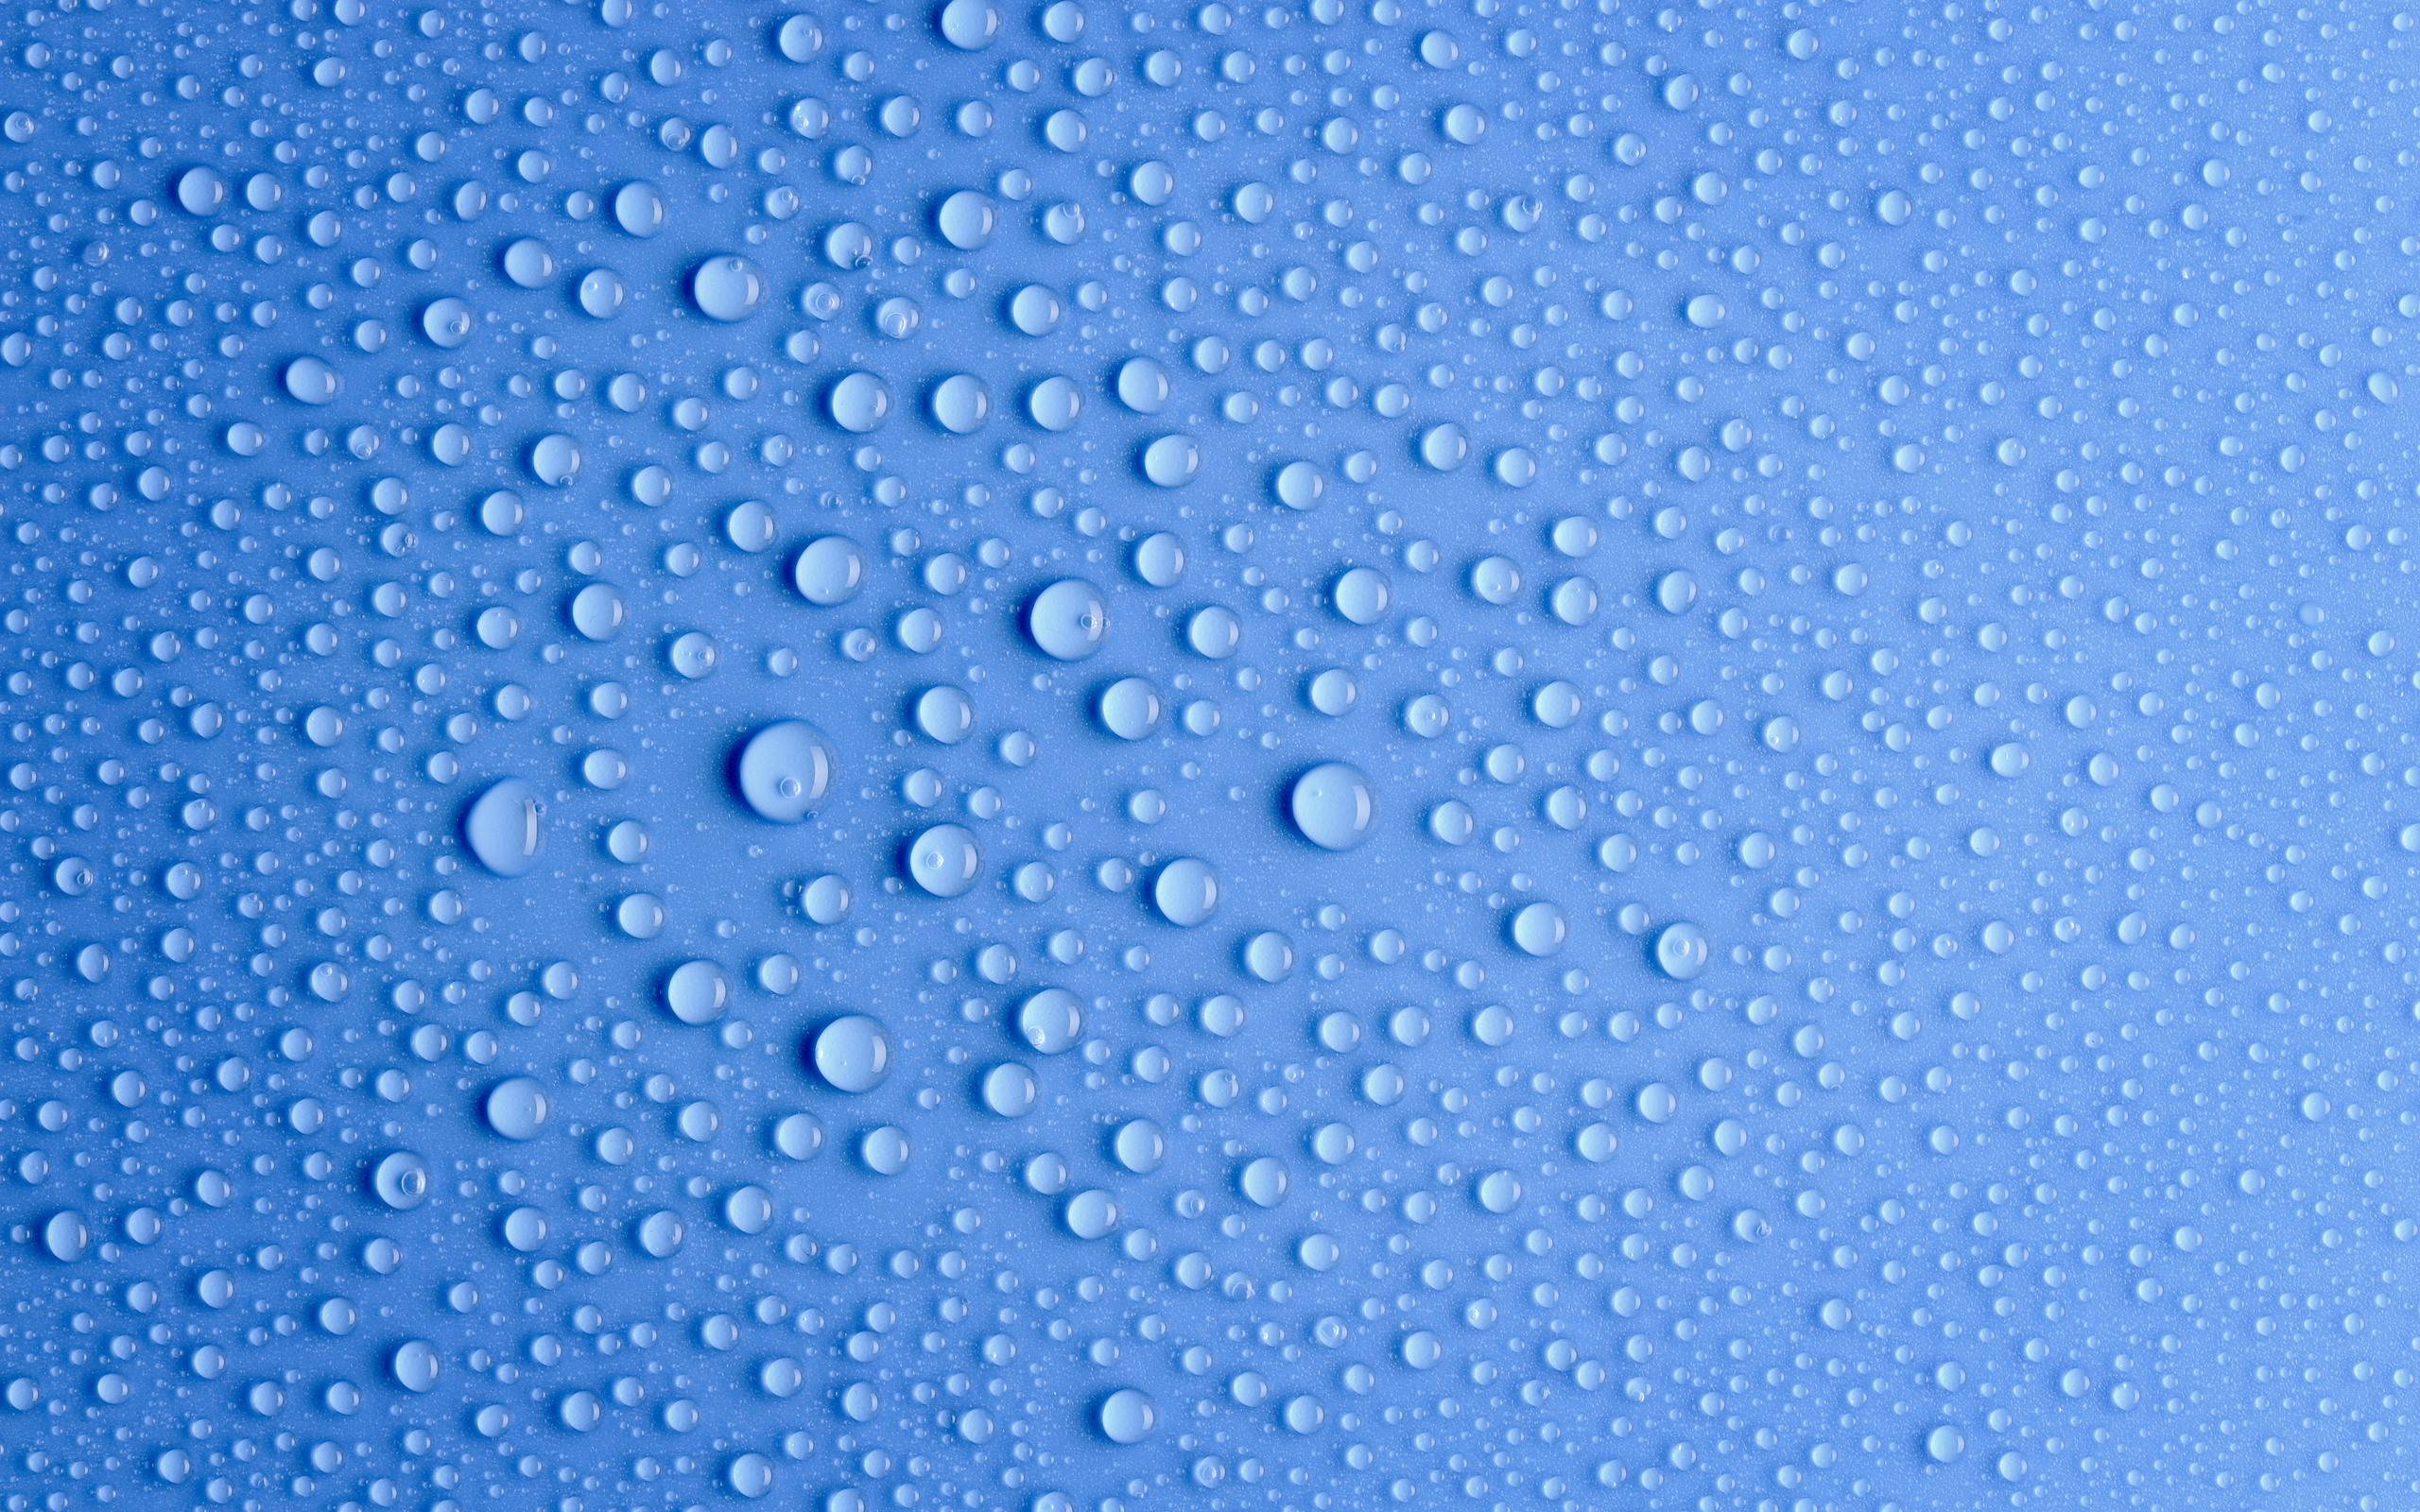 3 gouttes d'eau fraîche fond d'écran hd,bleu,l'eau,laissez tomber,modèle,humidité